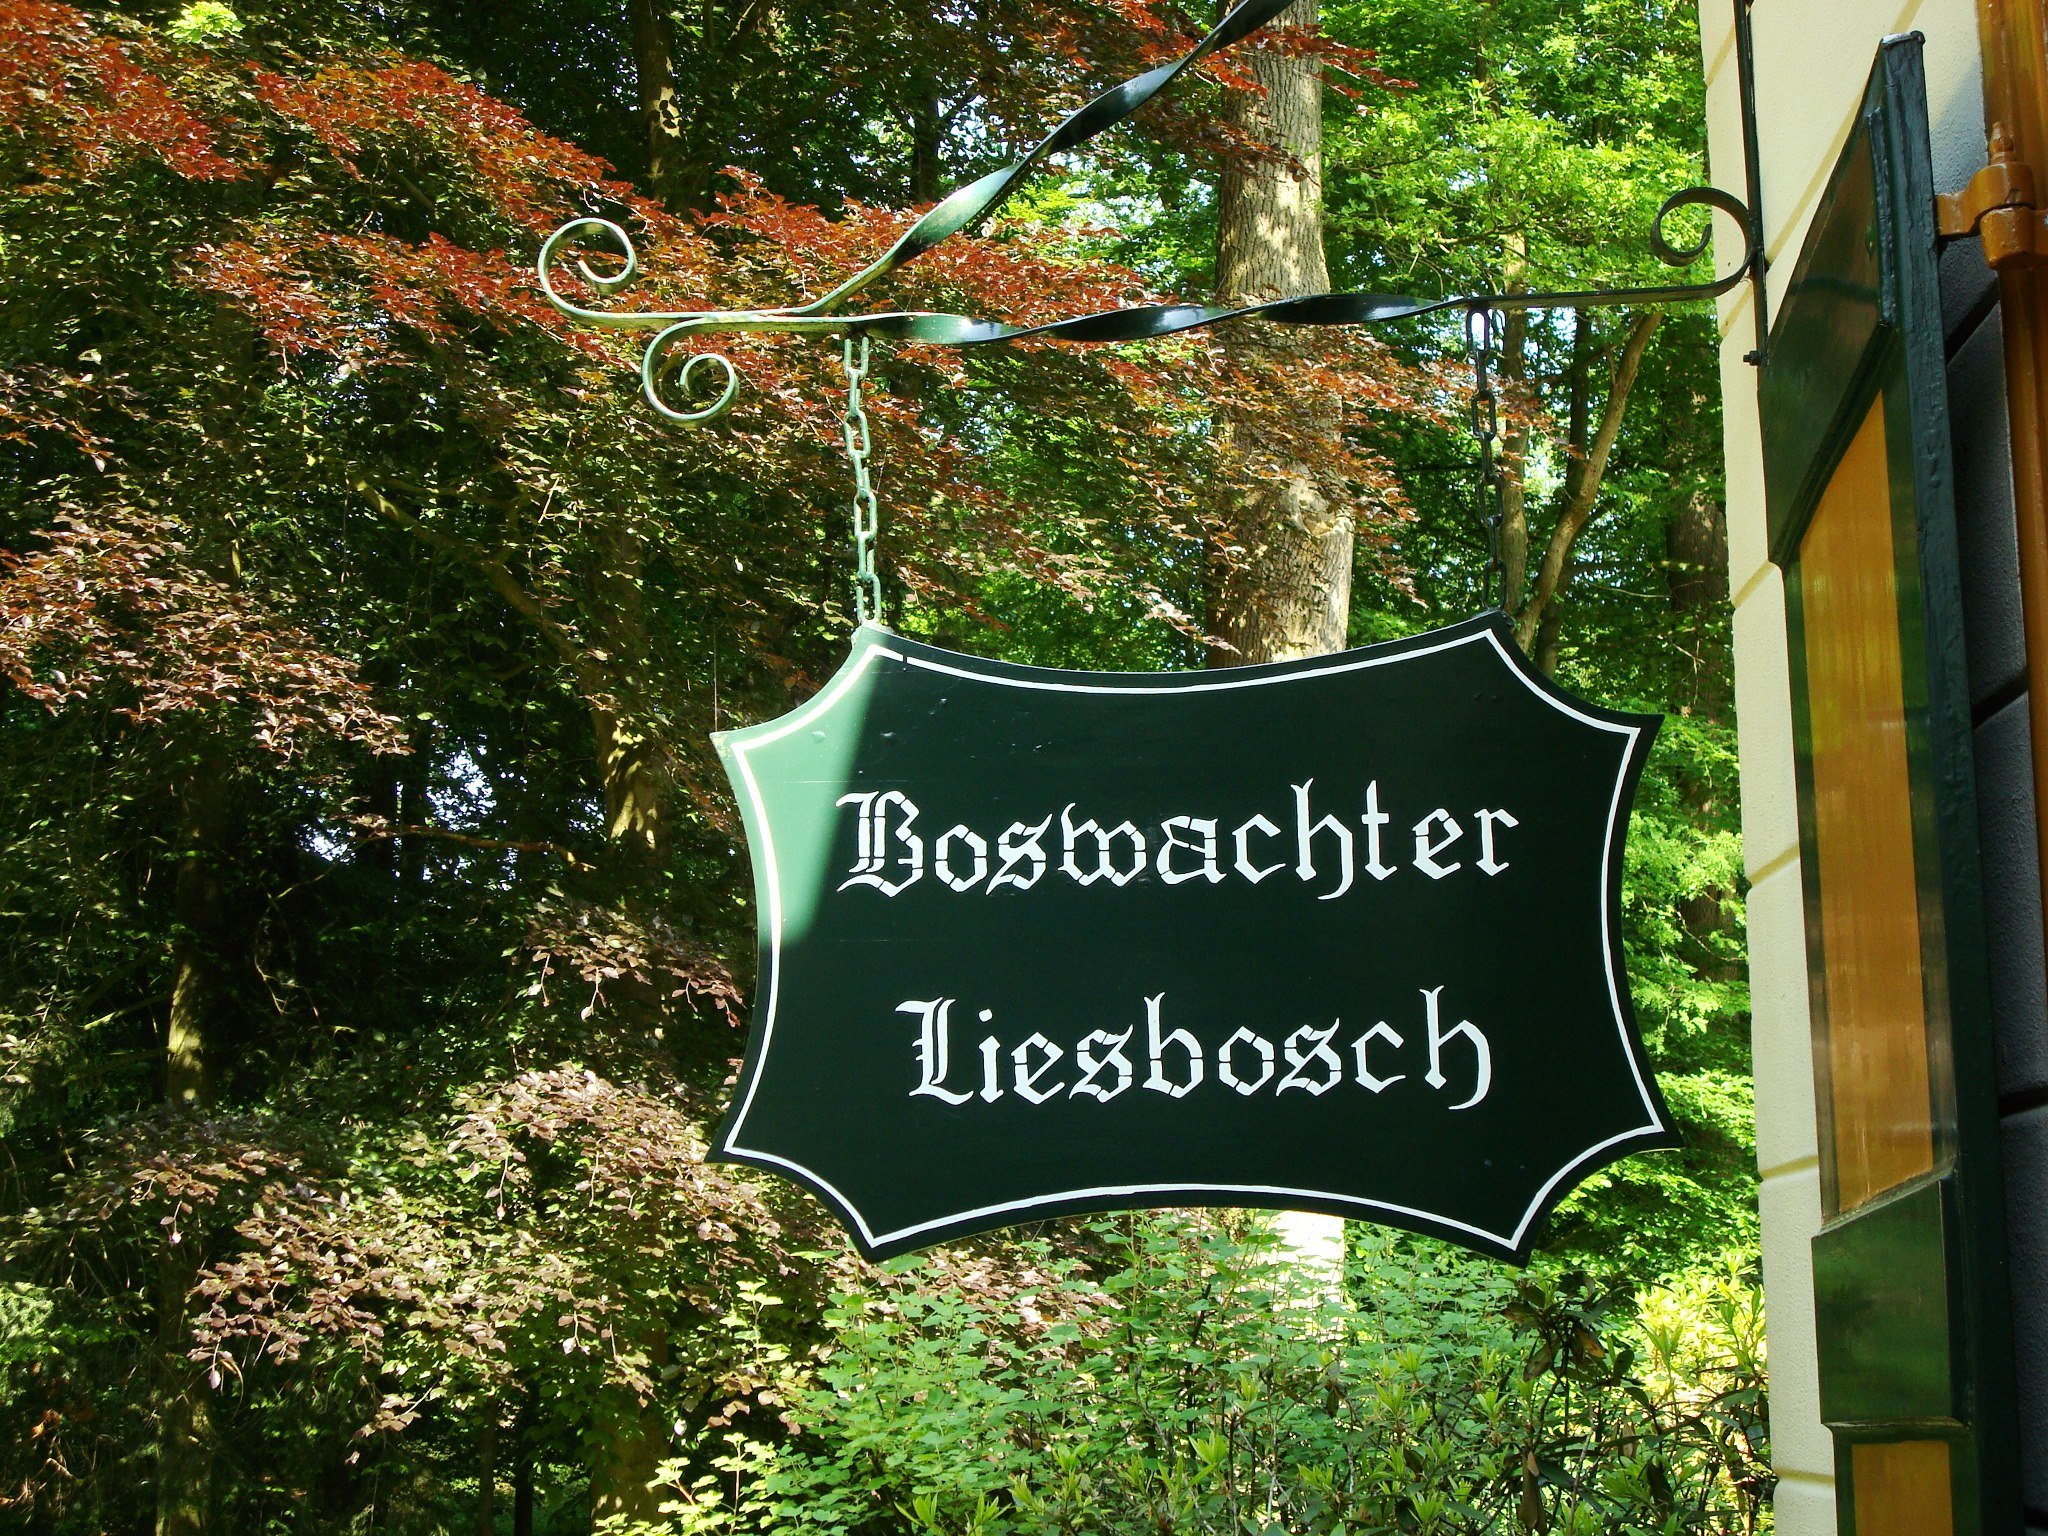 Boswachter Liesbosch